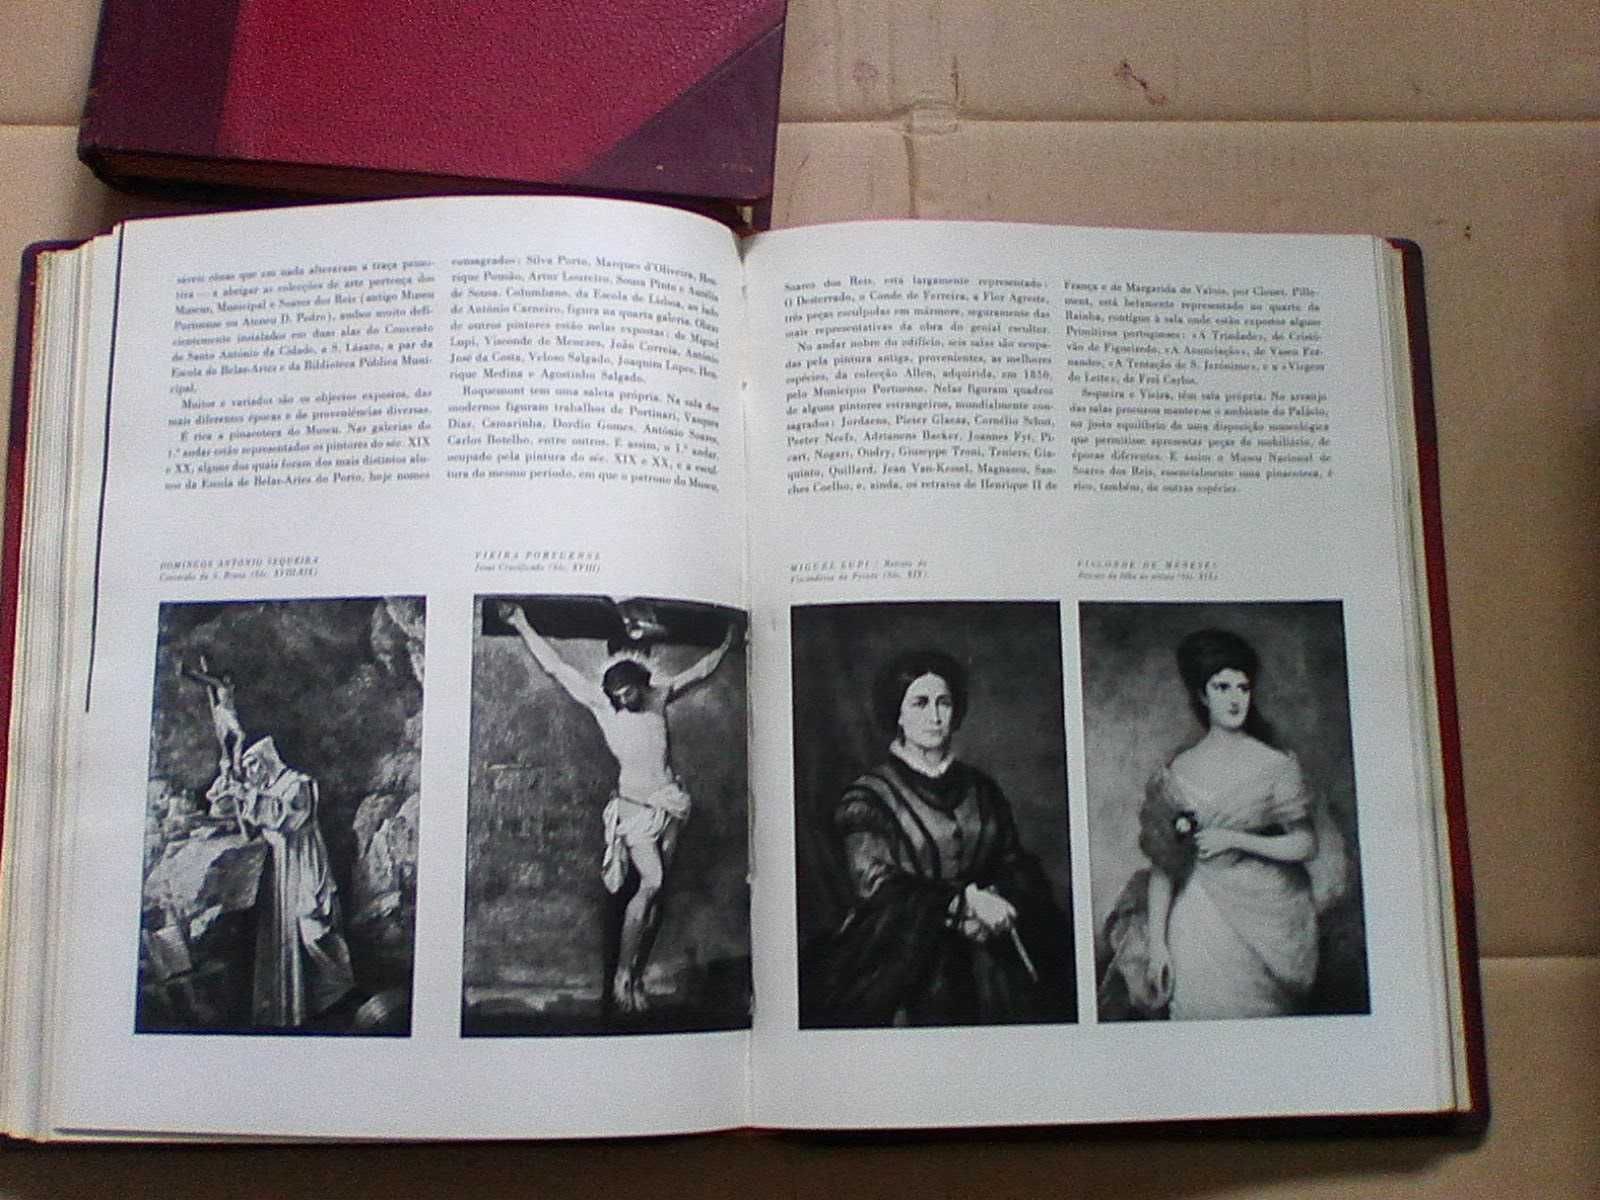 Colóquio - Revista de Artes e Letras 7 a 36